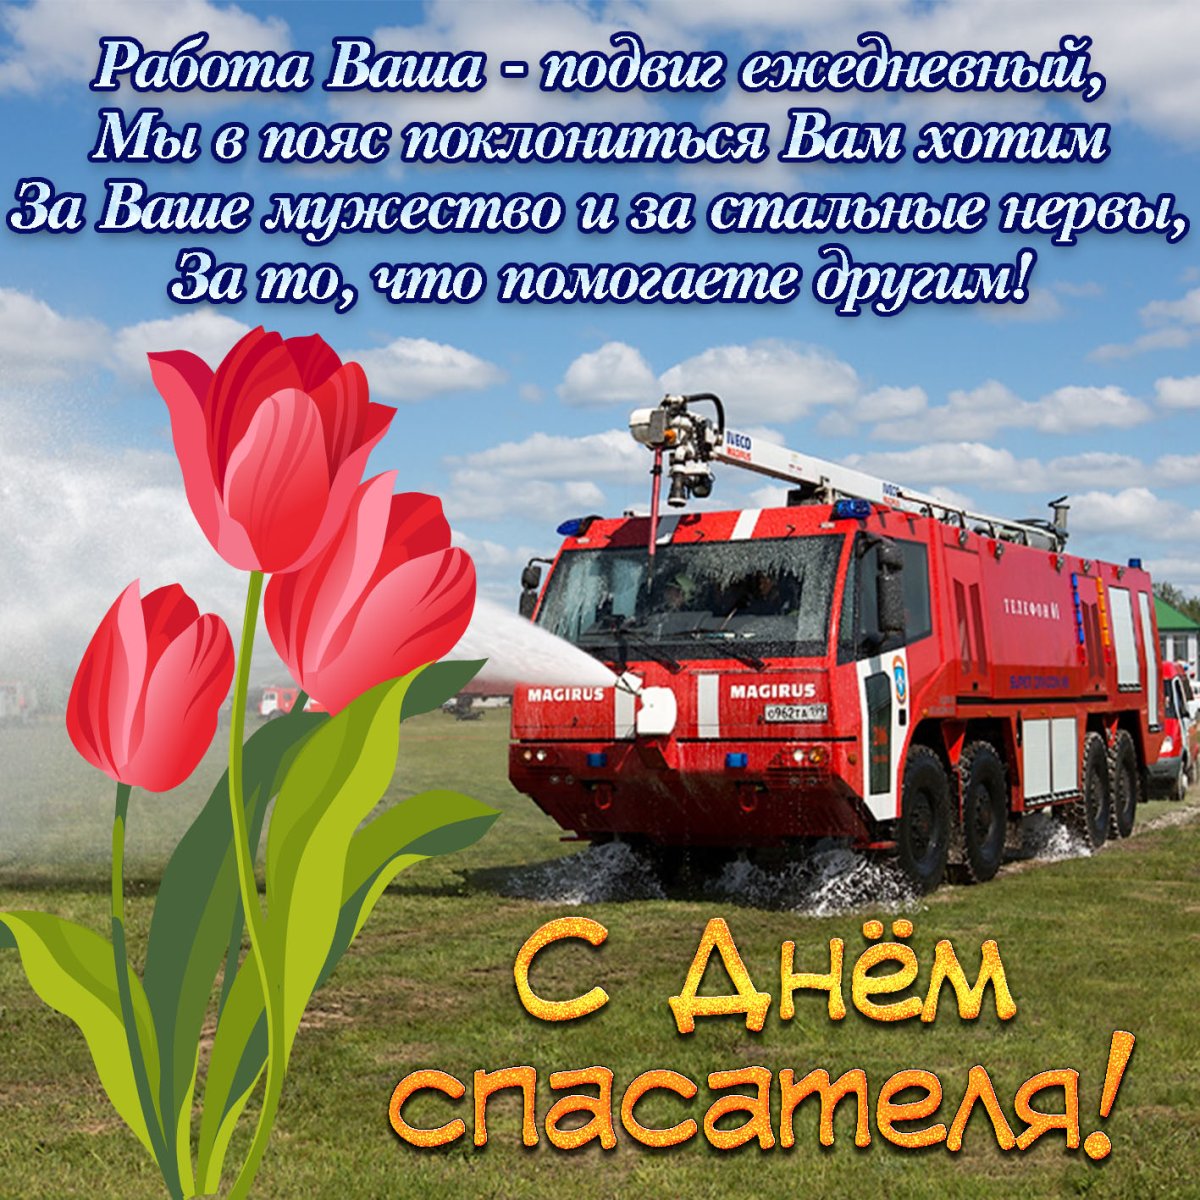 Поздравление в стихах в день рождения пожарному